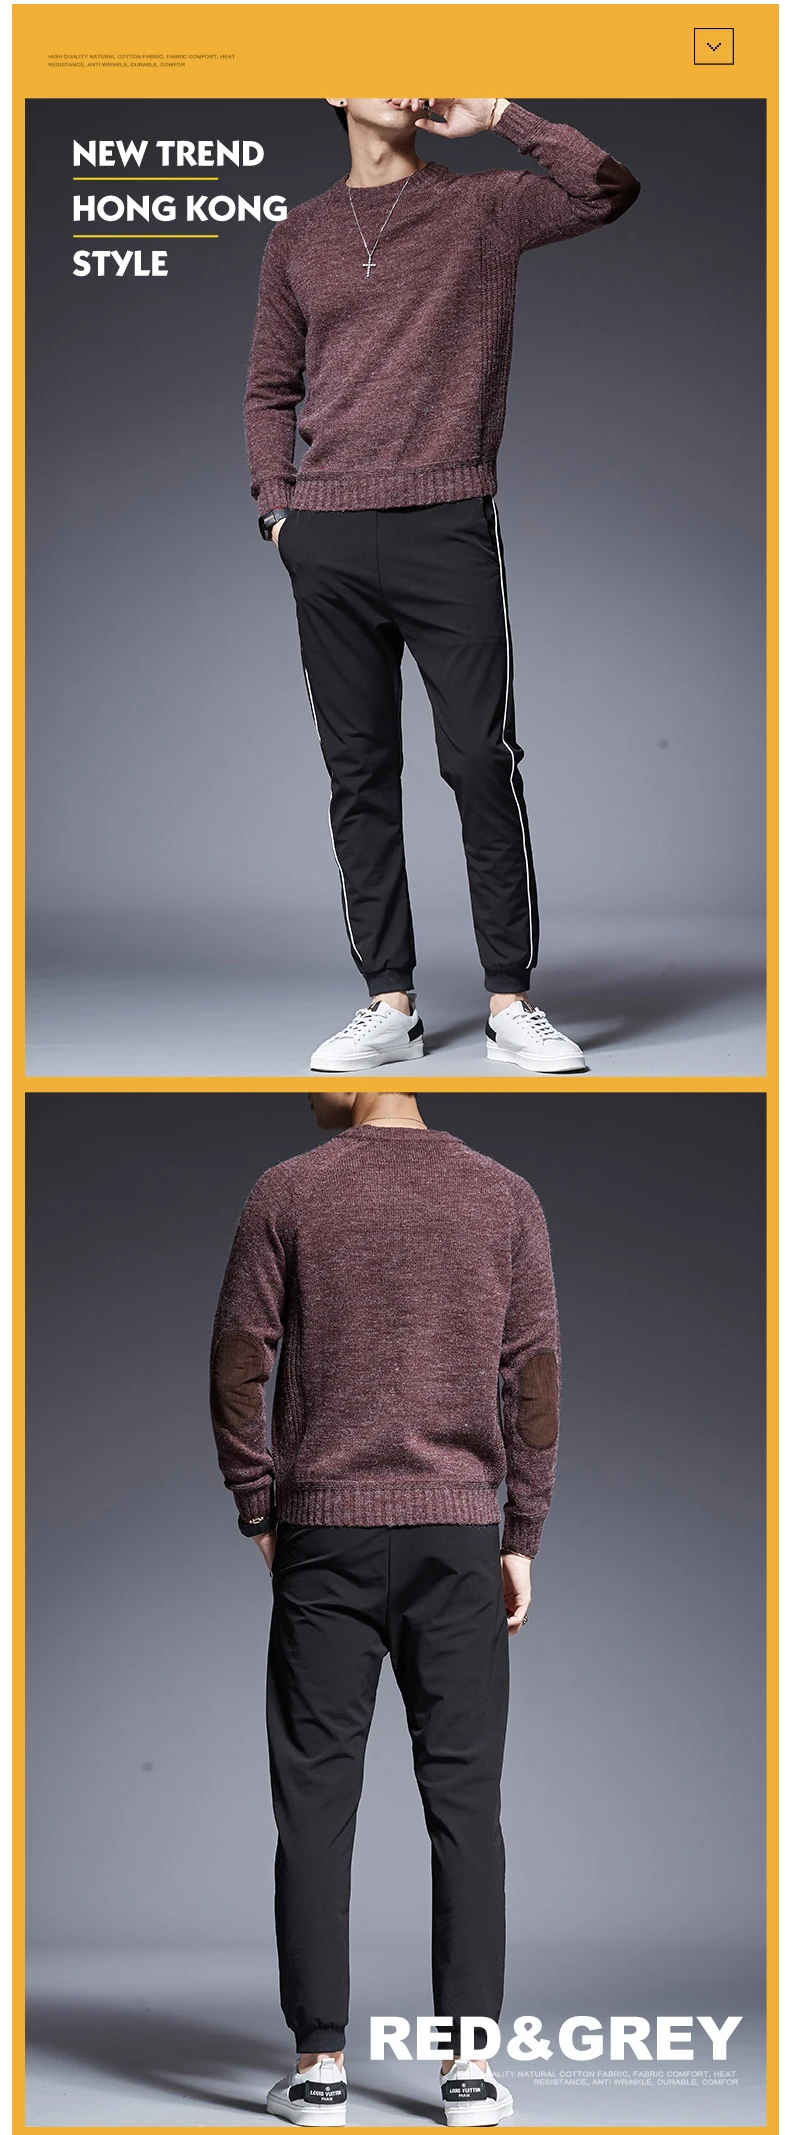 2019 новый модный бренд свитер мужской пуловер сплошной цвет Slim Fit Джемперы вязание толстый Осень корейский стиль повседневное мужская